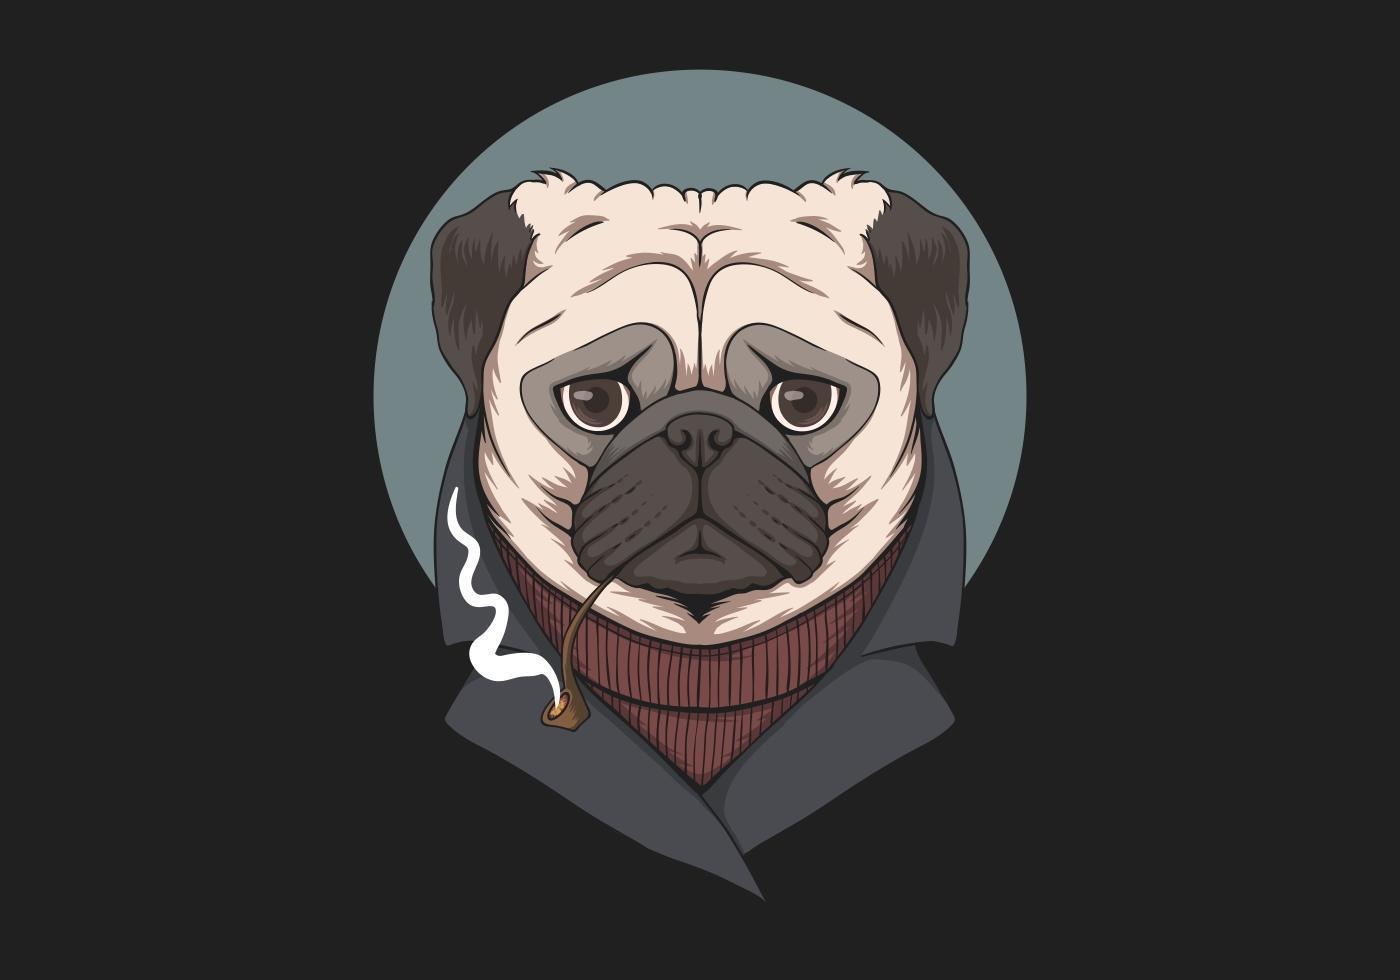 Pug dog smoke pipe illustration vector